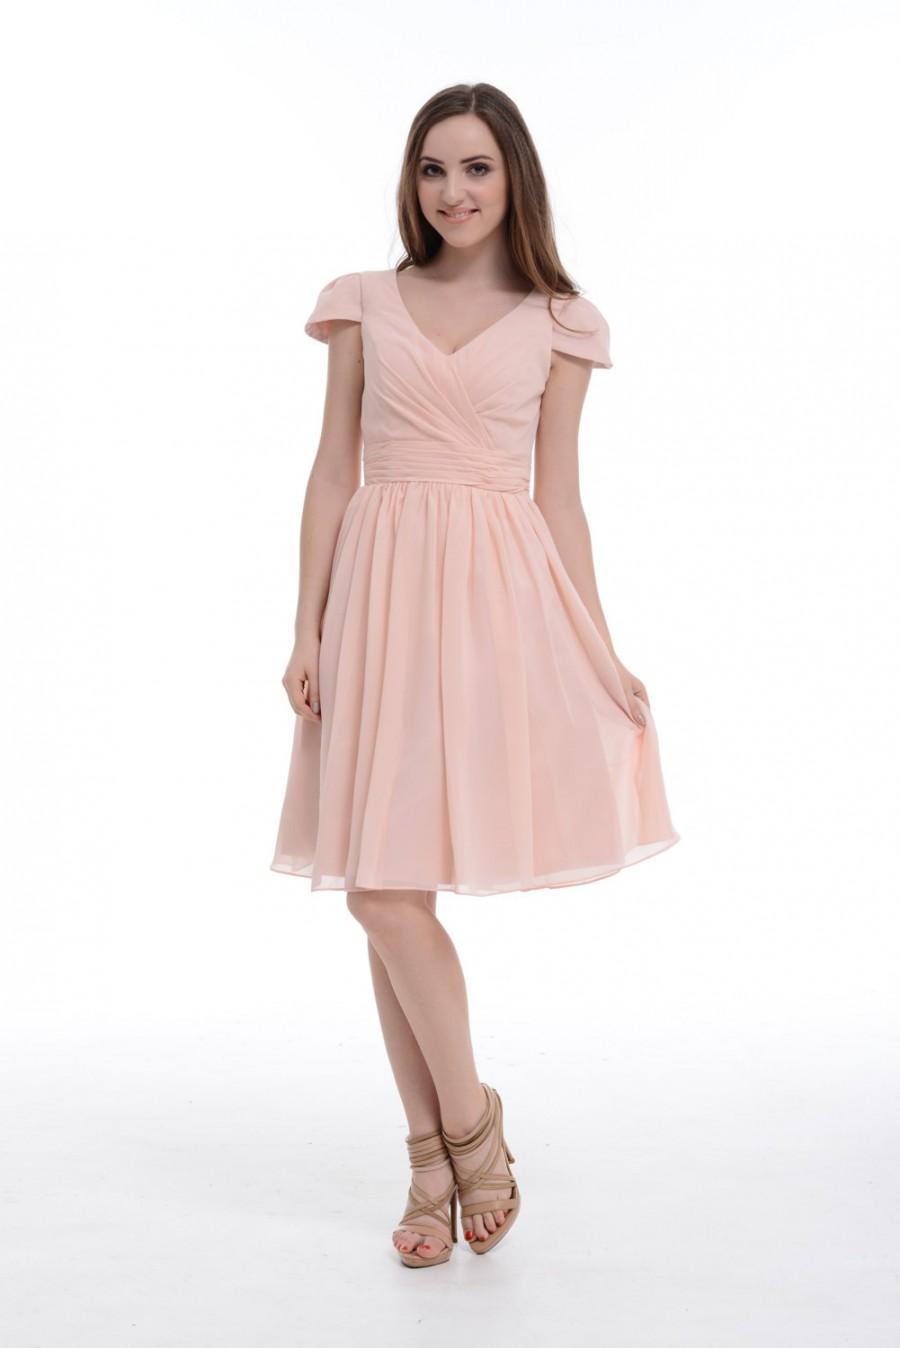 Mariage - Pearl Pink Chiffon Bridesmaid Dress, Bridesmaid Dress With Cap Sleeves